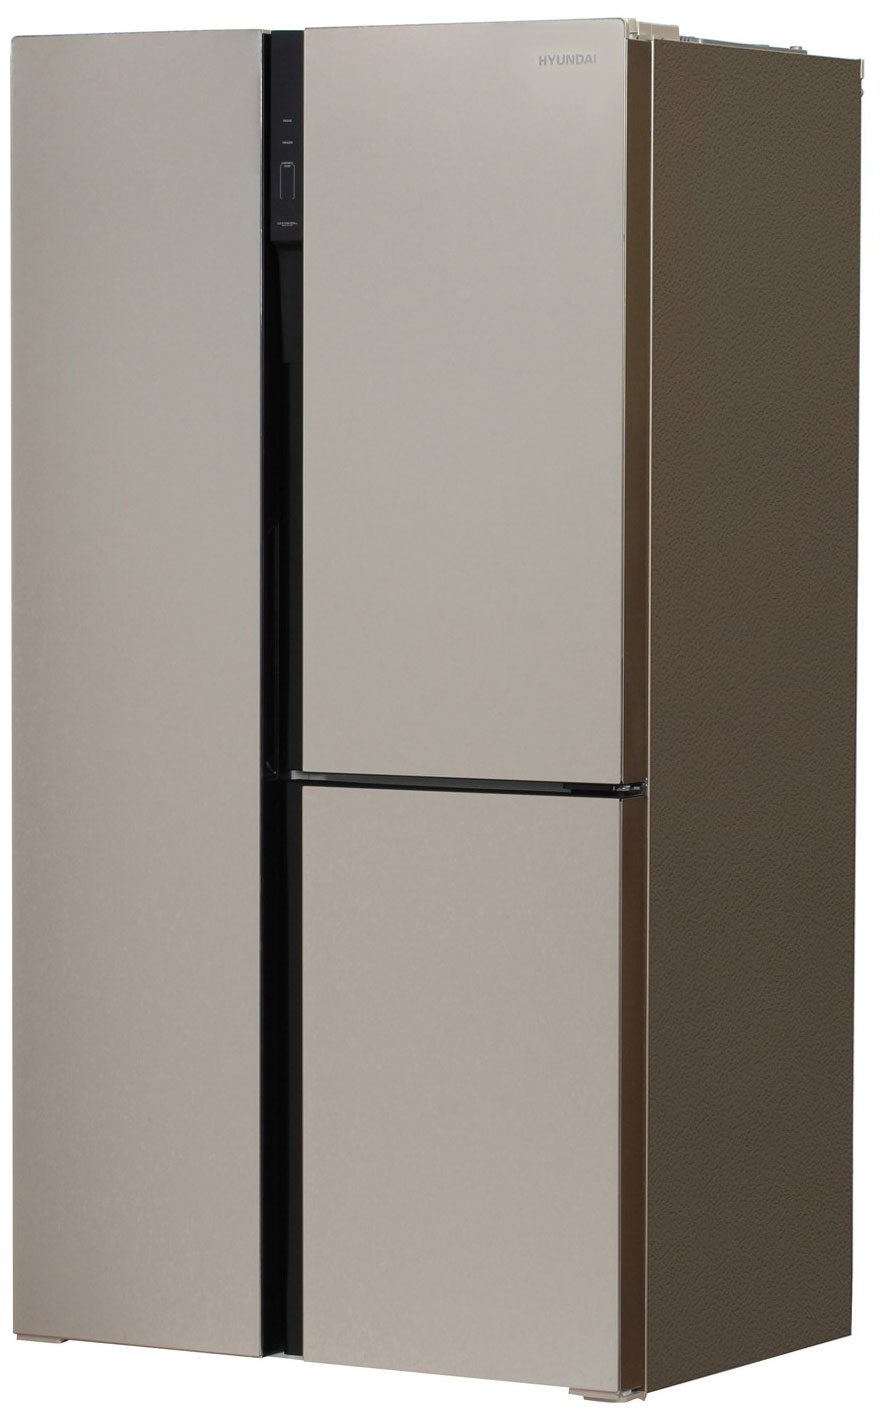 Холодильник Side by Side Hyundai CS6073FV шампань холодильник side by side hyundai cm5084fgbk